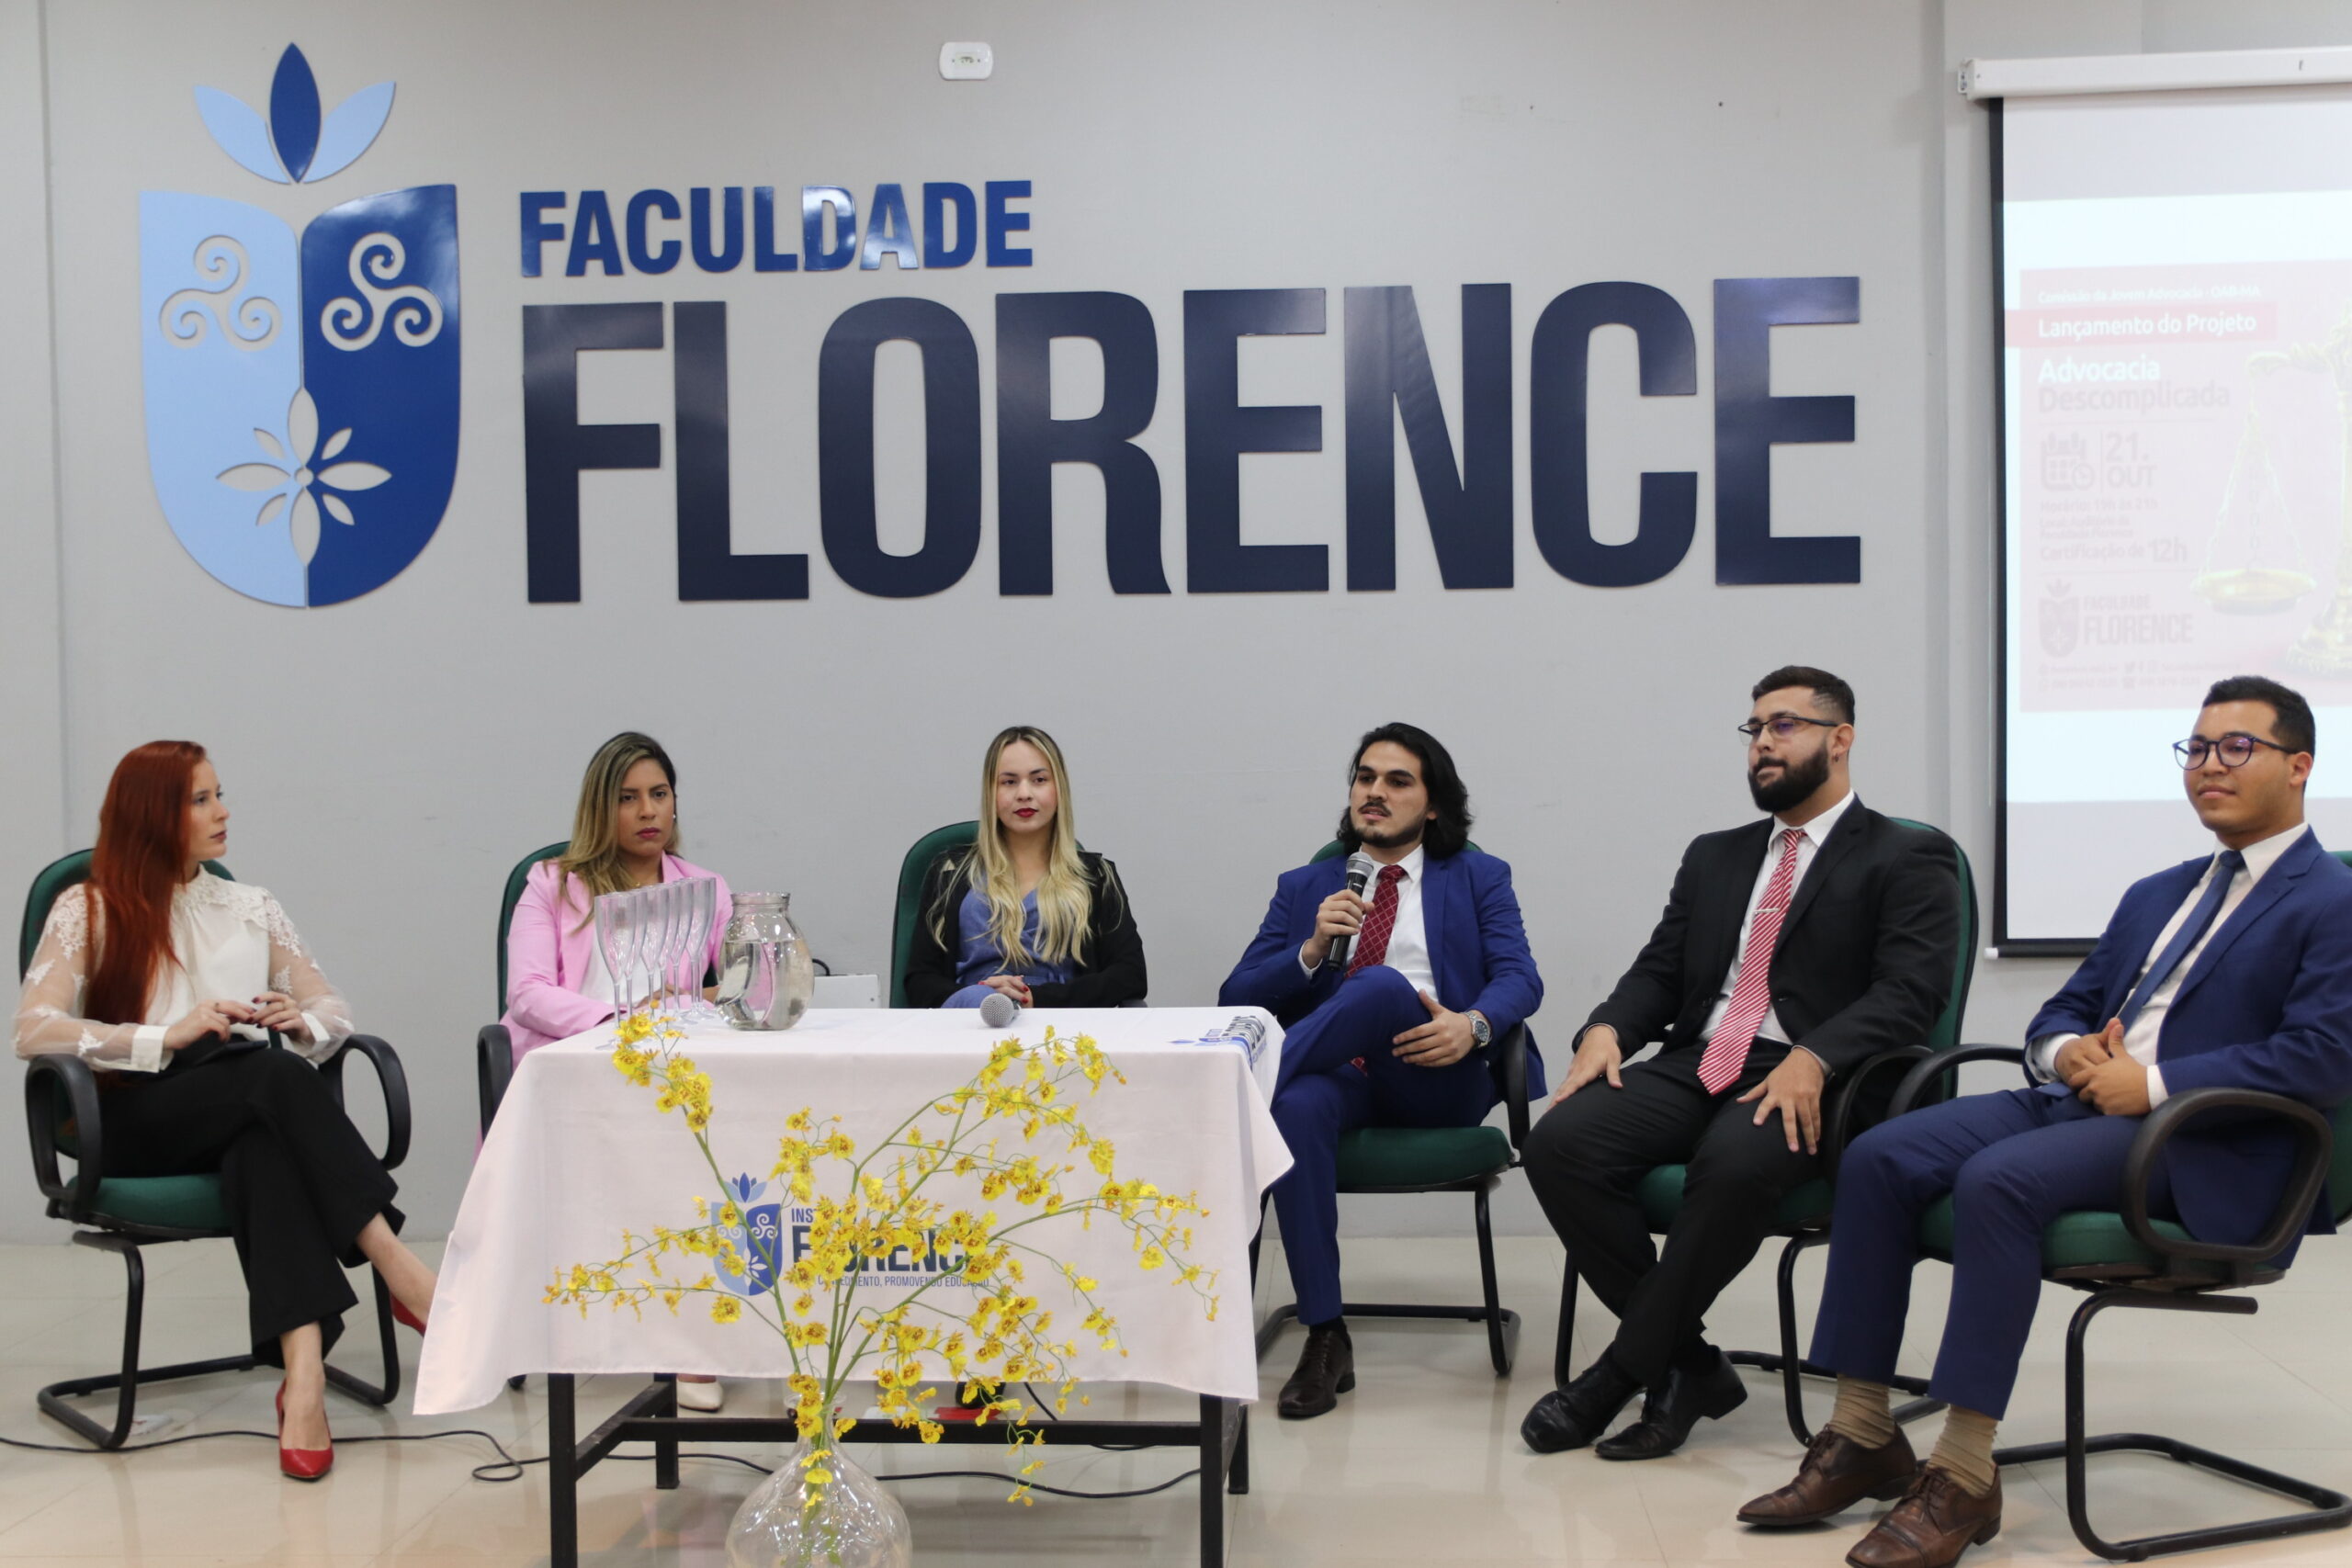 Faculdade Femaf realiza projeto para aprovação de seus acadêmicos na OAB